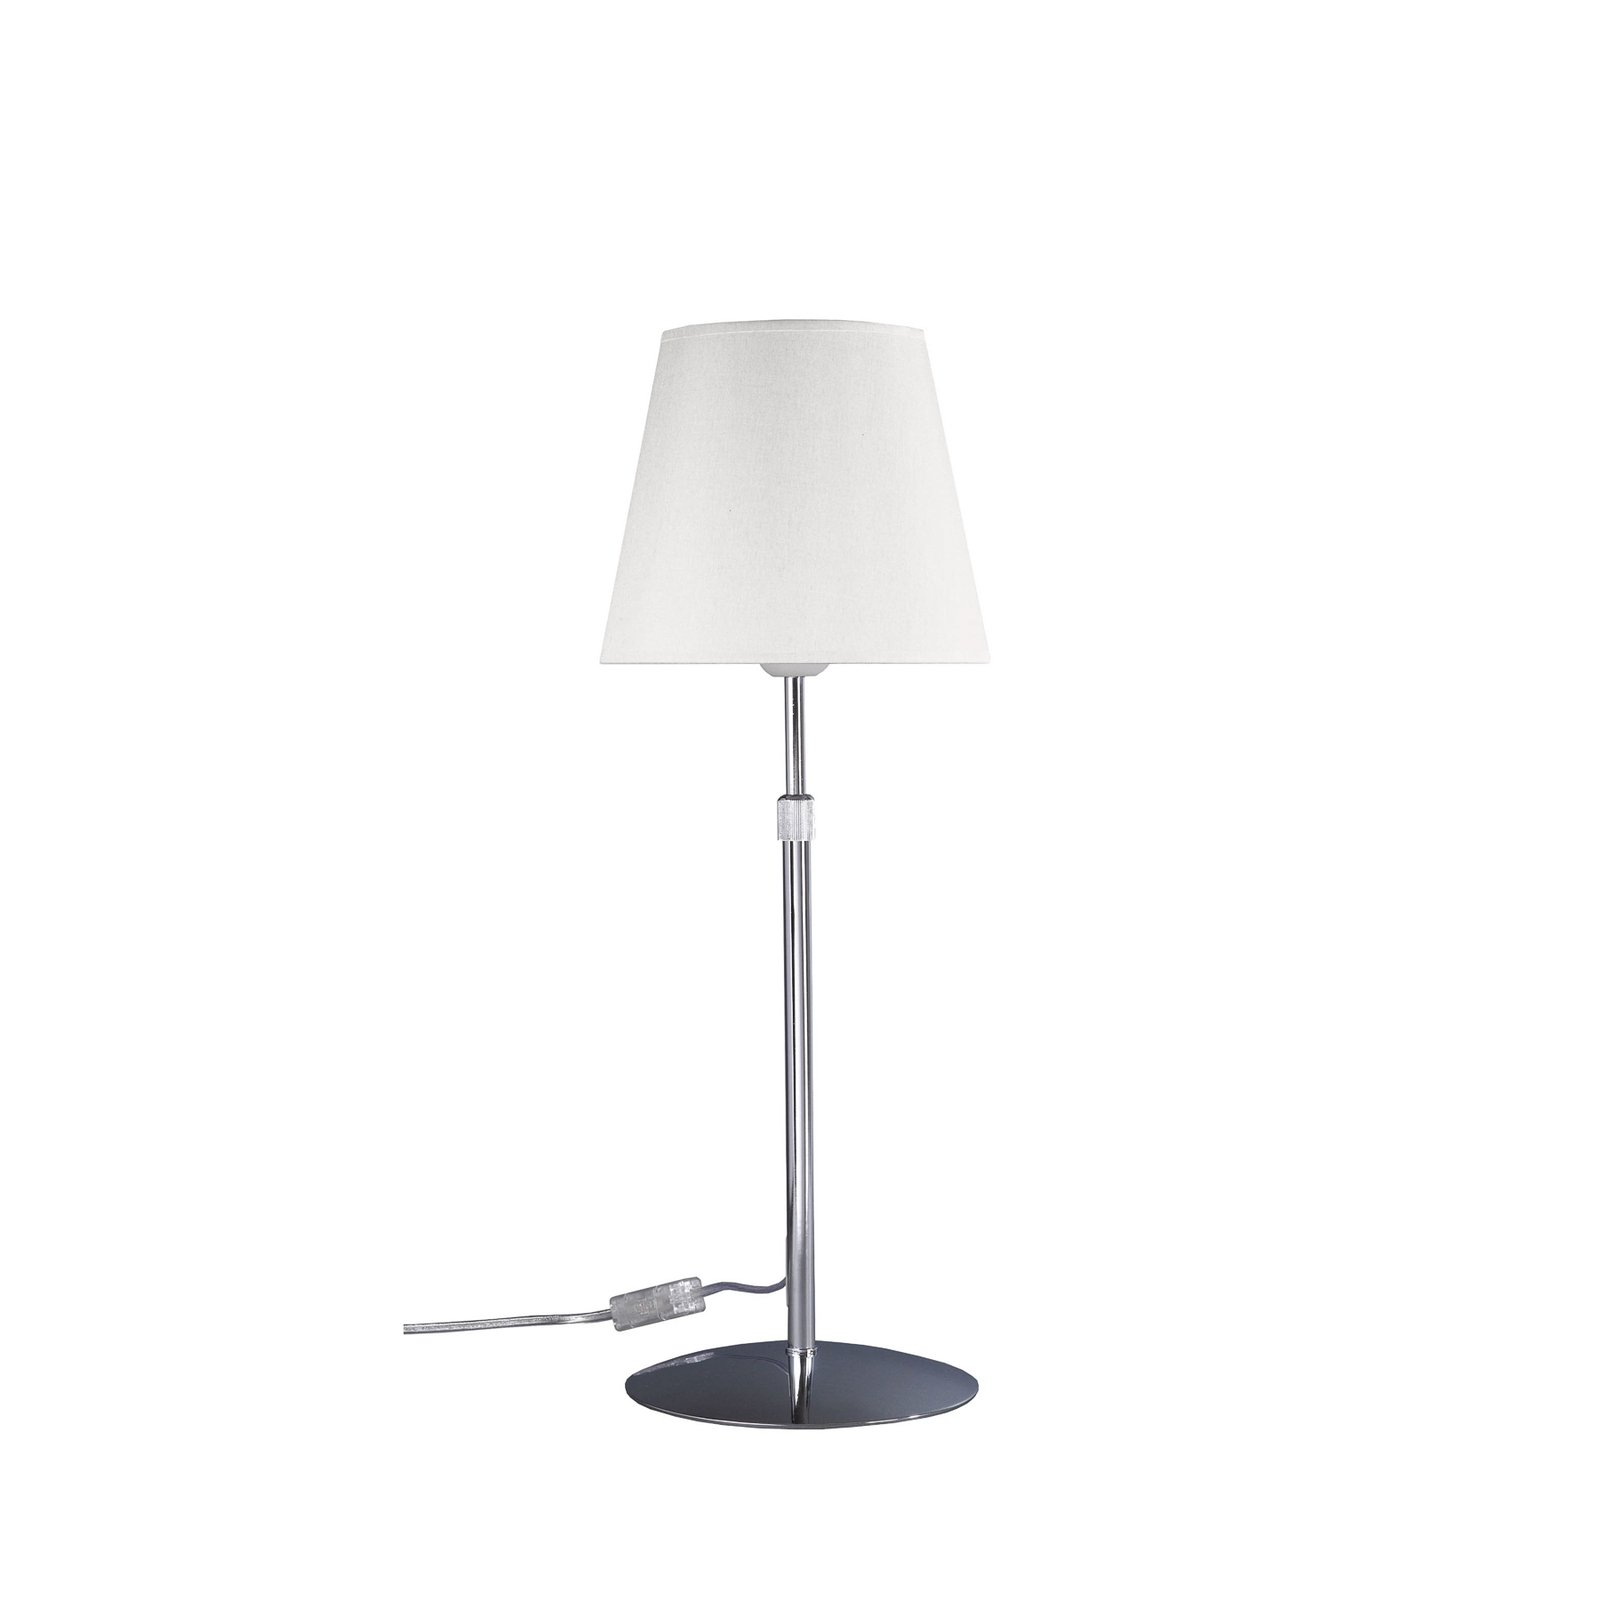 Aluminor Store stolní lampa, chrom/bílá